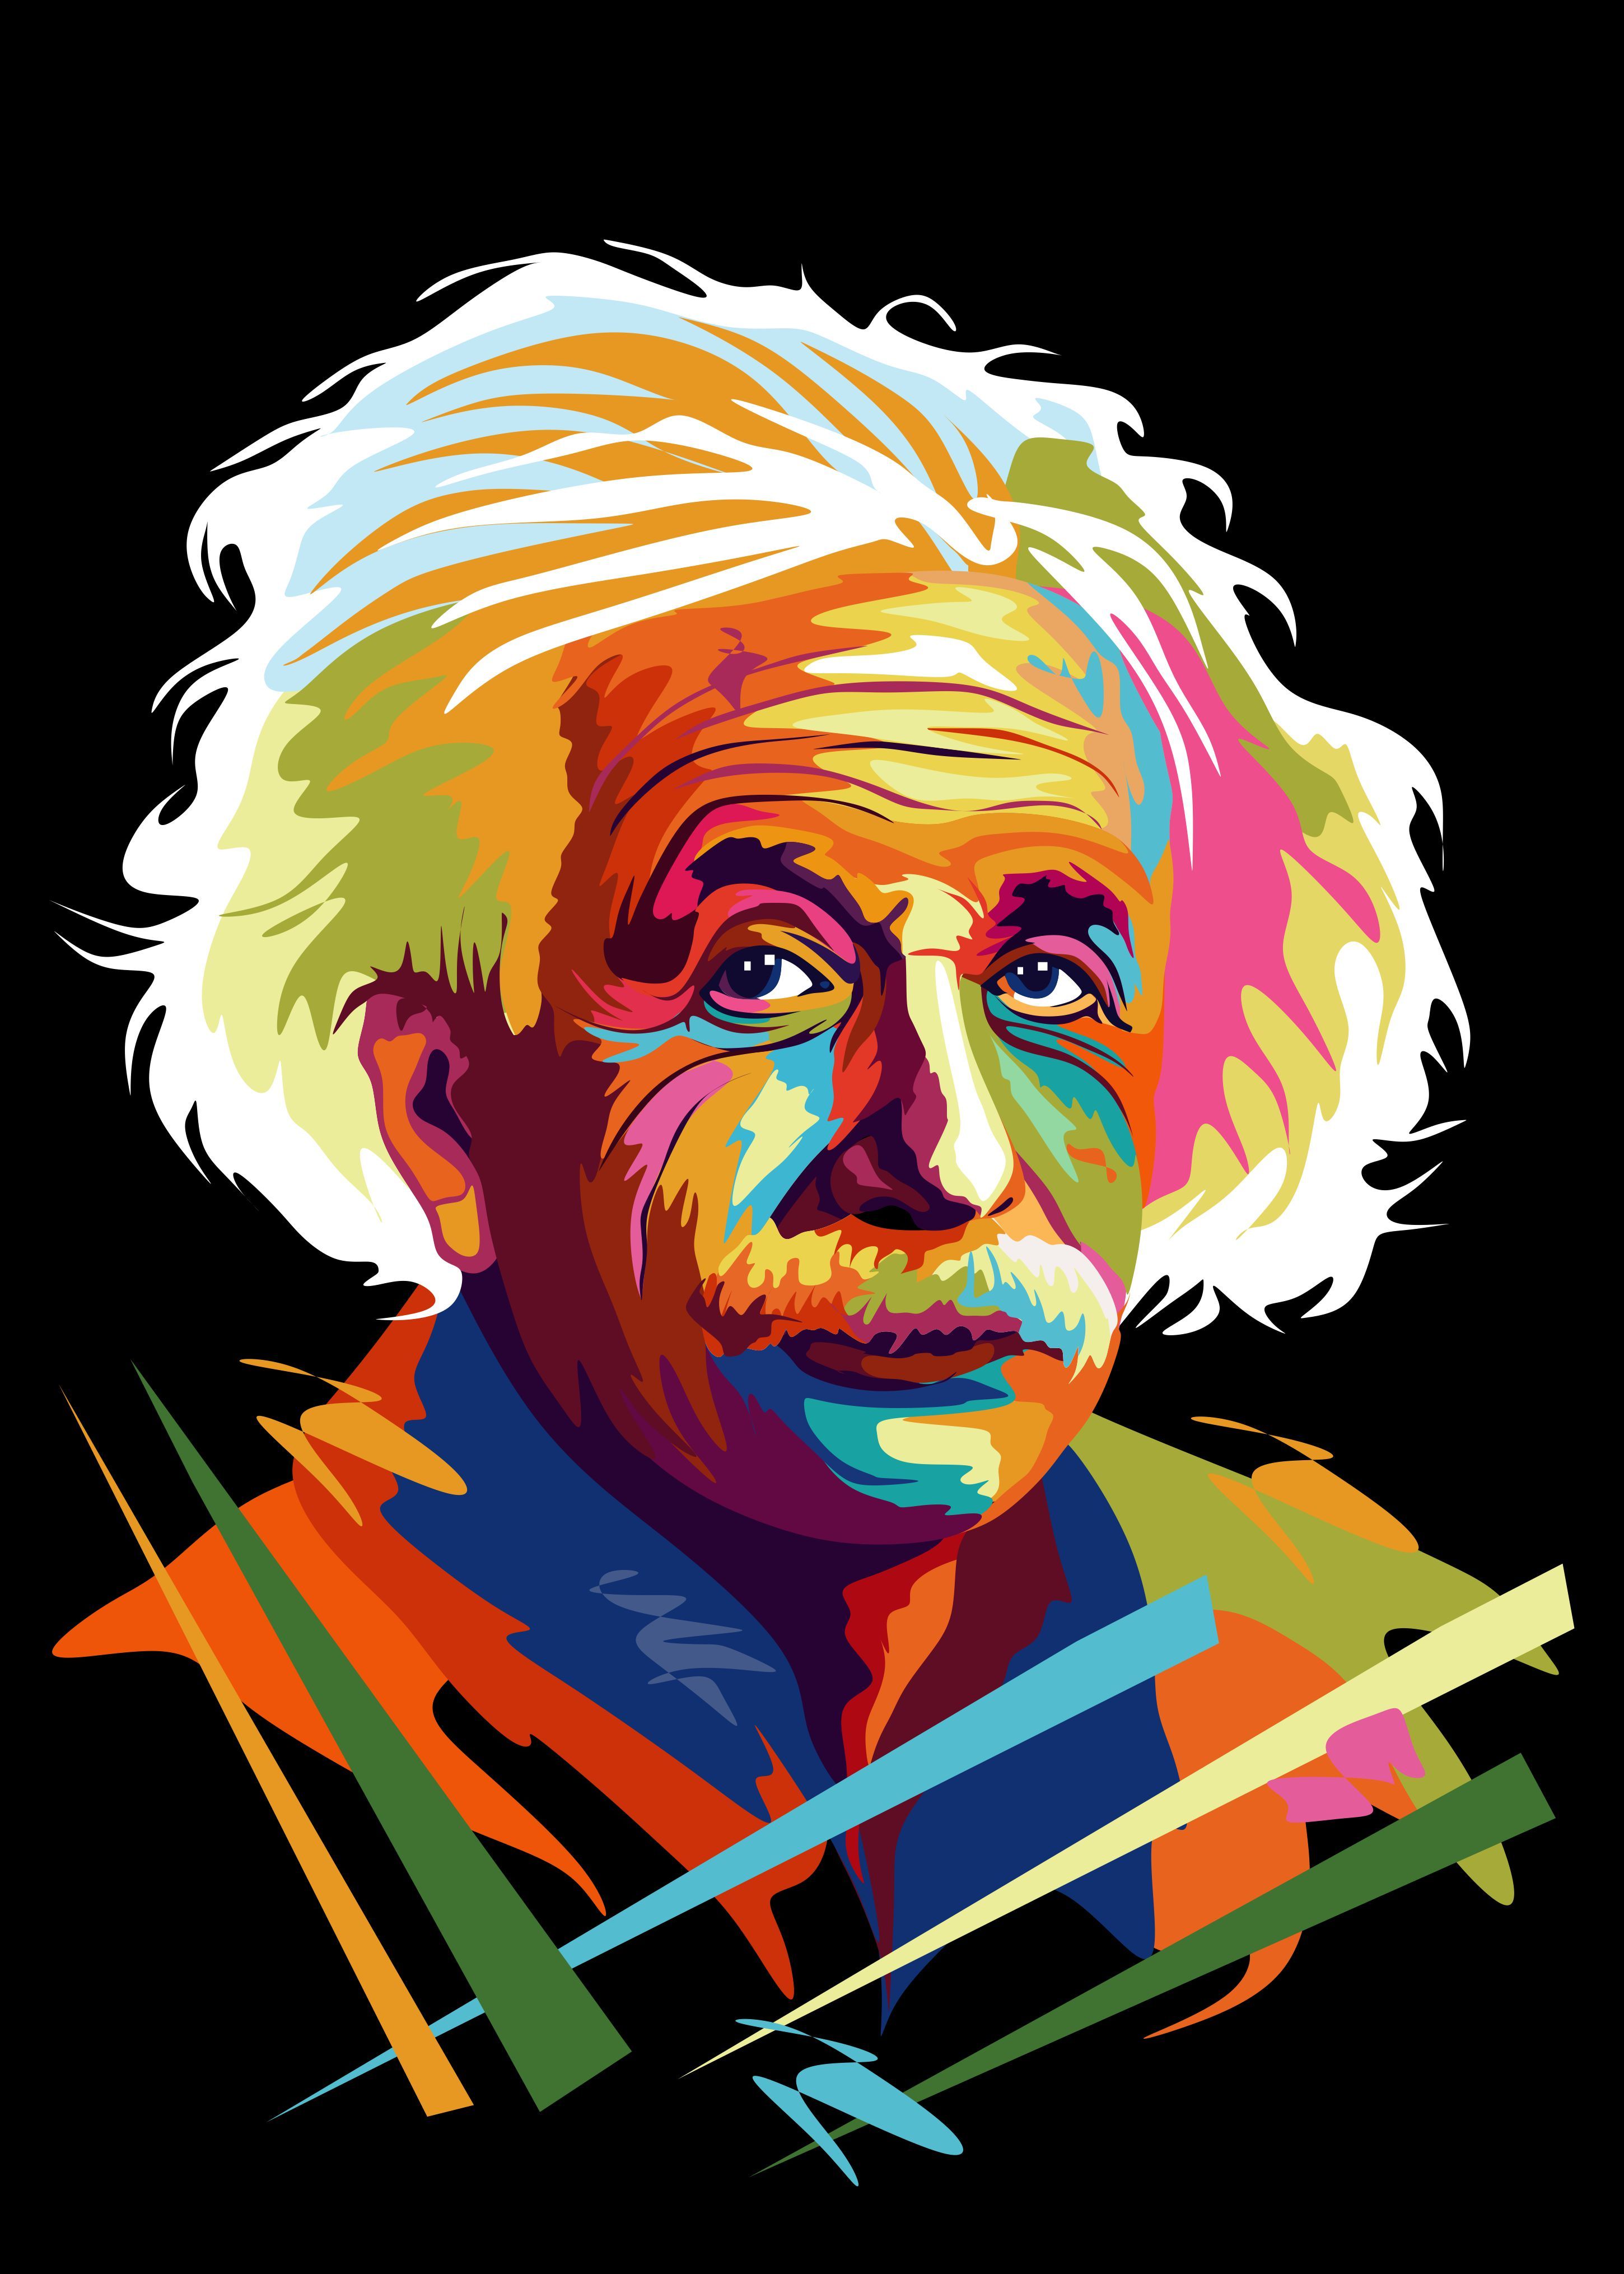  Albert Einstein Hintergrundbild 2900x4060. albert einstein. Pop art portraits, Wpap art, Einstein